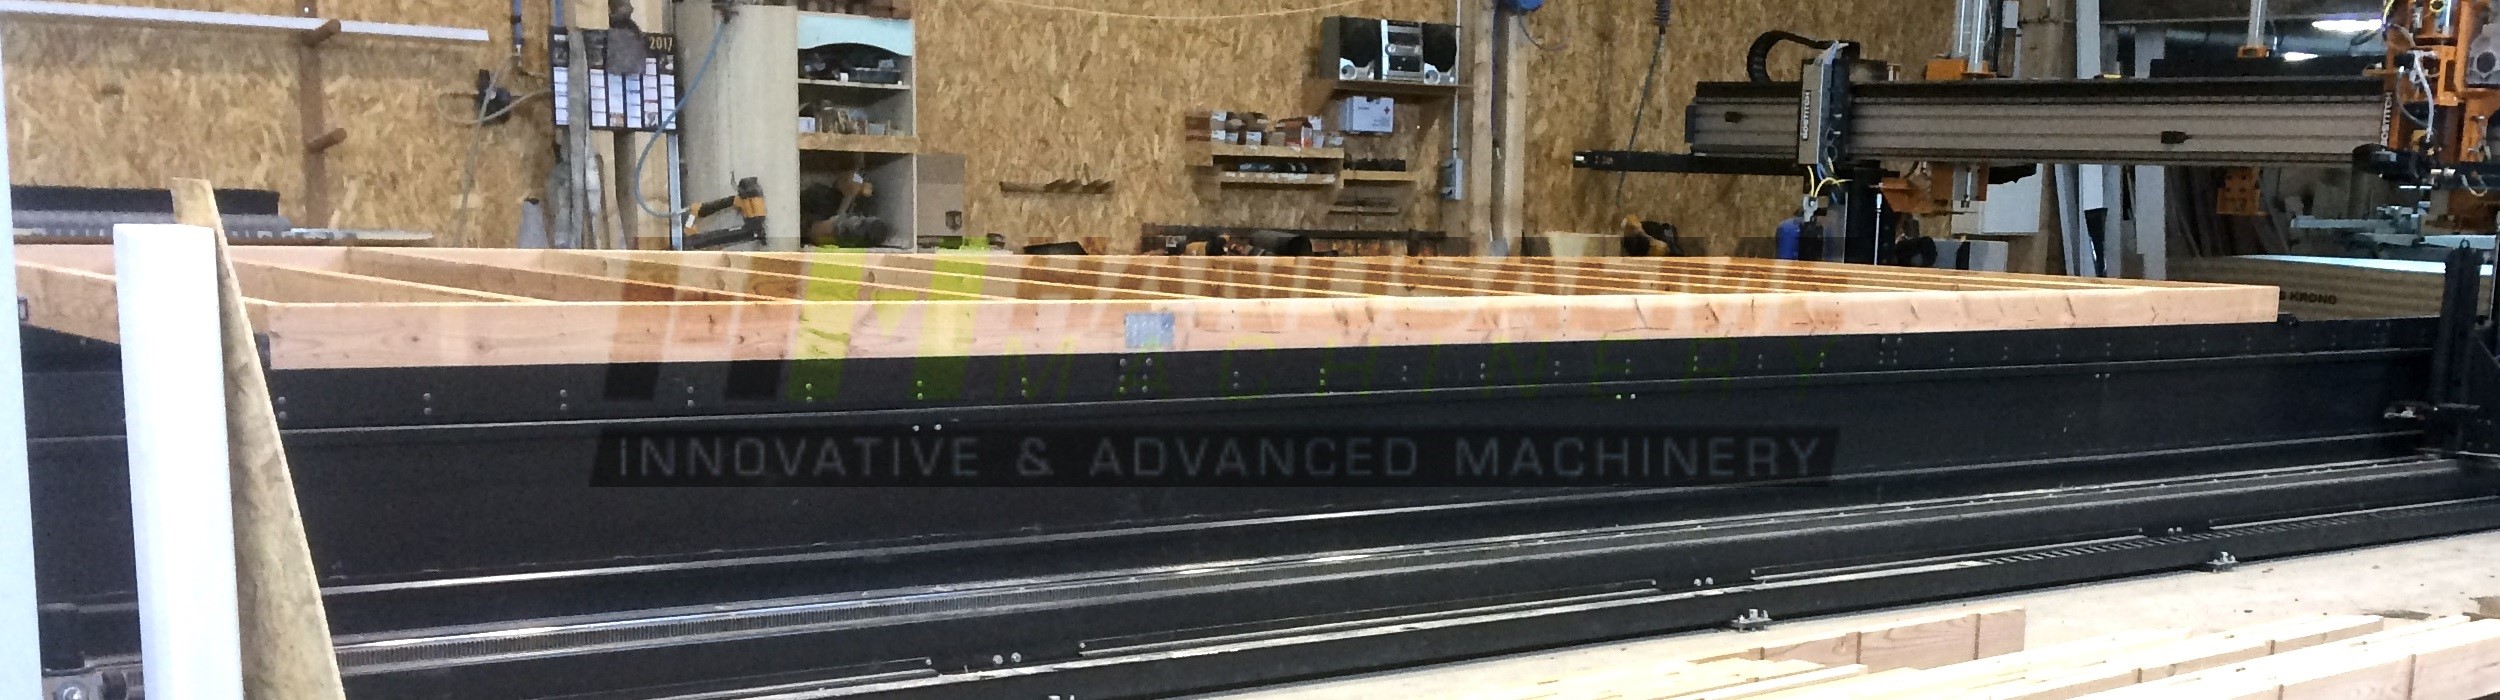 Machine voor indoor houtskeletbouw